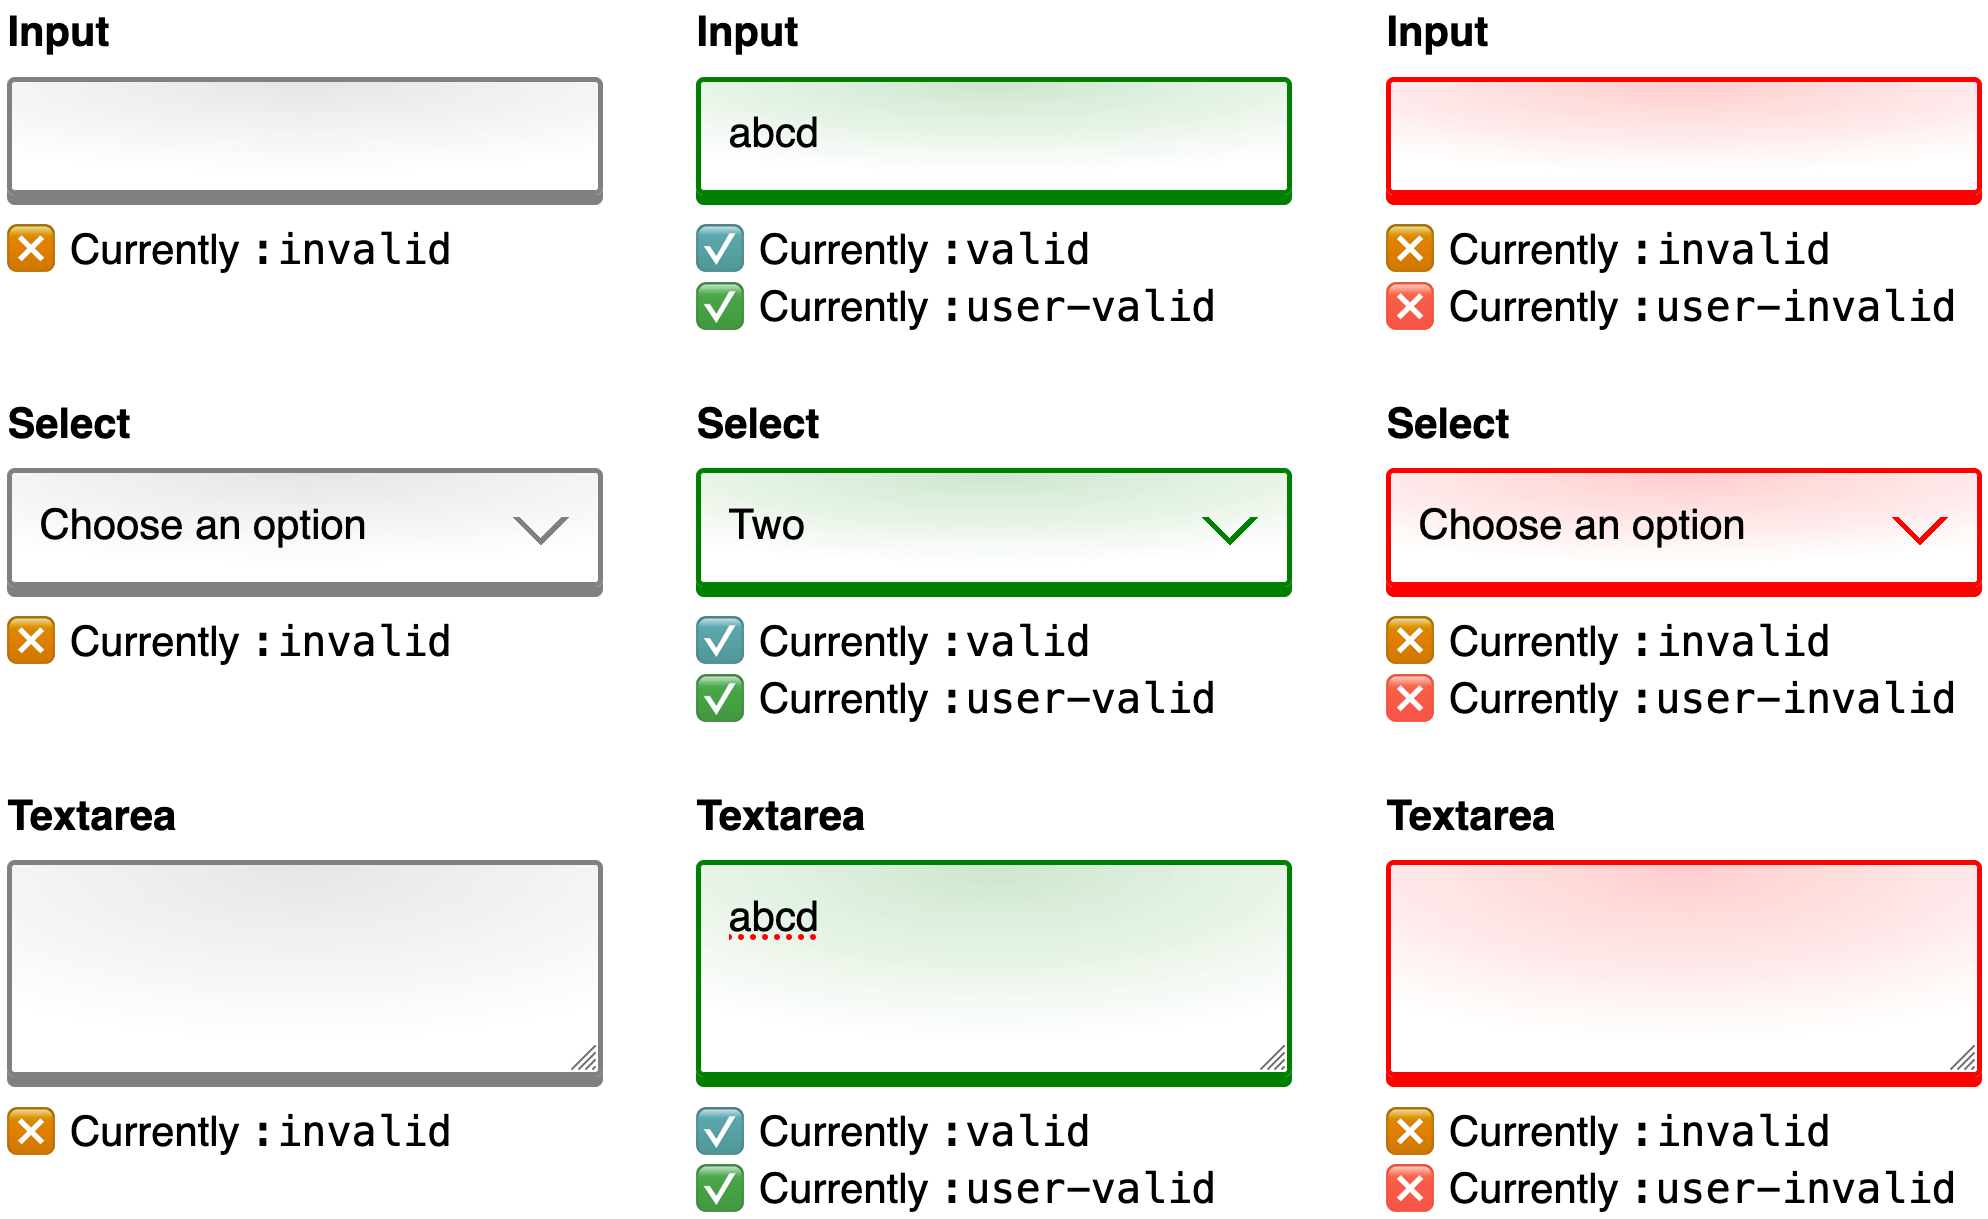 تصویری که 3 اسکرین شات را در کنار هم برای مقایسه ترکیب می کند. هر اسکرین شات یک فرم وب با همان ورودی، انتخاب و کنترل های ناحیه متنی را نشان می دهد. اسکرین شات اول فرم را در حالت اولیه قبل از هر ورودی کاربر نشان می دهد. مرزهای کنترل خاکستری هستند و متن راهنمای زیر توضیح می دهد که هر کنترل در حال حاضر با انتخابگر شبه کلاس :invalid مطابقت دارد. اسکرین شات دوم پس از اینکه کاربر ورودی برای هر کنترل ارائه کرد، همان فرم را نشان می دهد. مرزهای کنترل سبز هستند و متن راهنمای زیر توضیح می دهد که هر کنترل در حال حاضر با هر دو انتخابگر کلاس شبه :valid و :user-valid مطابقت دارد. سومین و آخرین اسکرین شات همان فرم را بعد از اینکه کاربر تمام ورودی خود را حذف کرد نشان می دهد. مرزهای کنترل قرمز هستند و متن راهنمای زیر توضیح می دهد که هر کنترل در حال حاضر با هر دو انتخابگر کلاس شبه :invalid و :user-invalid مطابقت دارد.